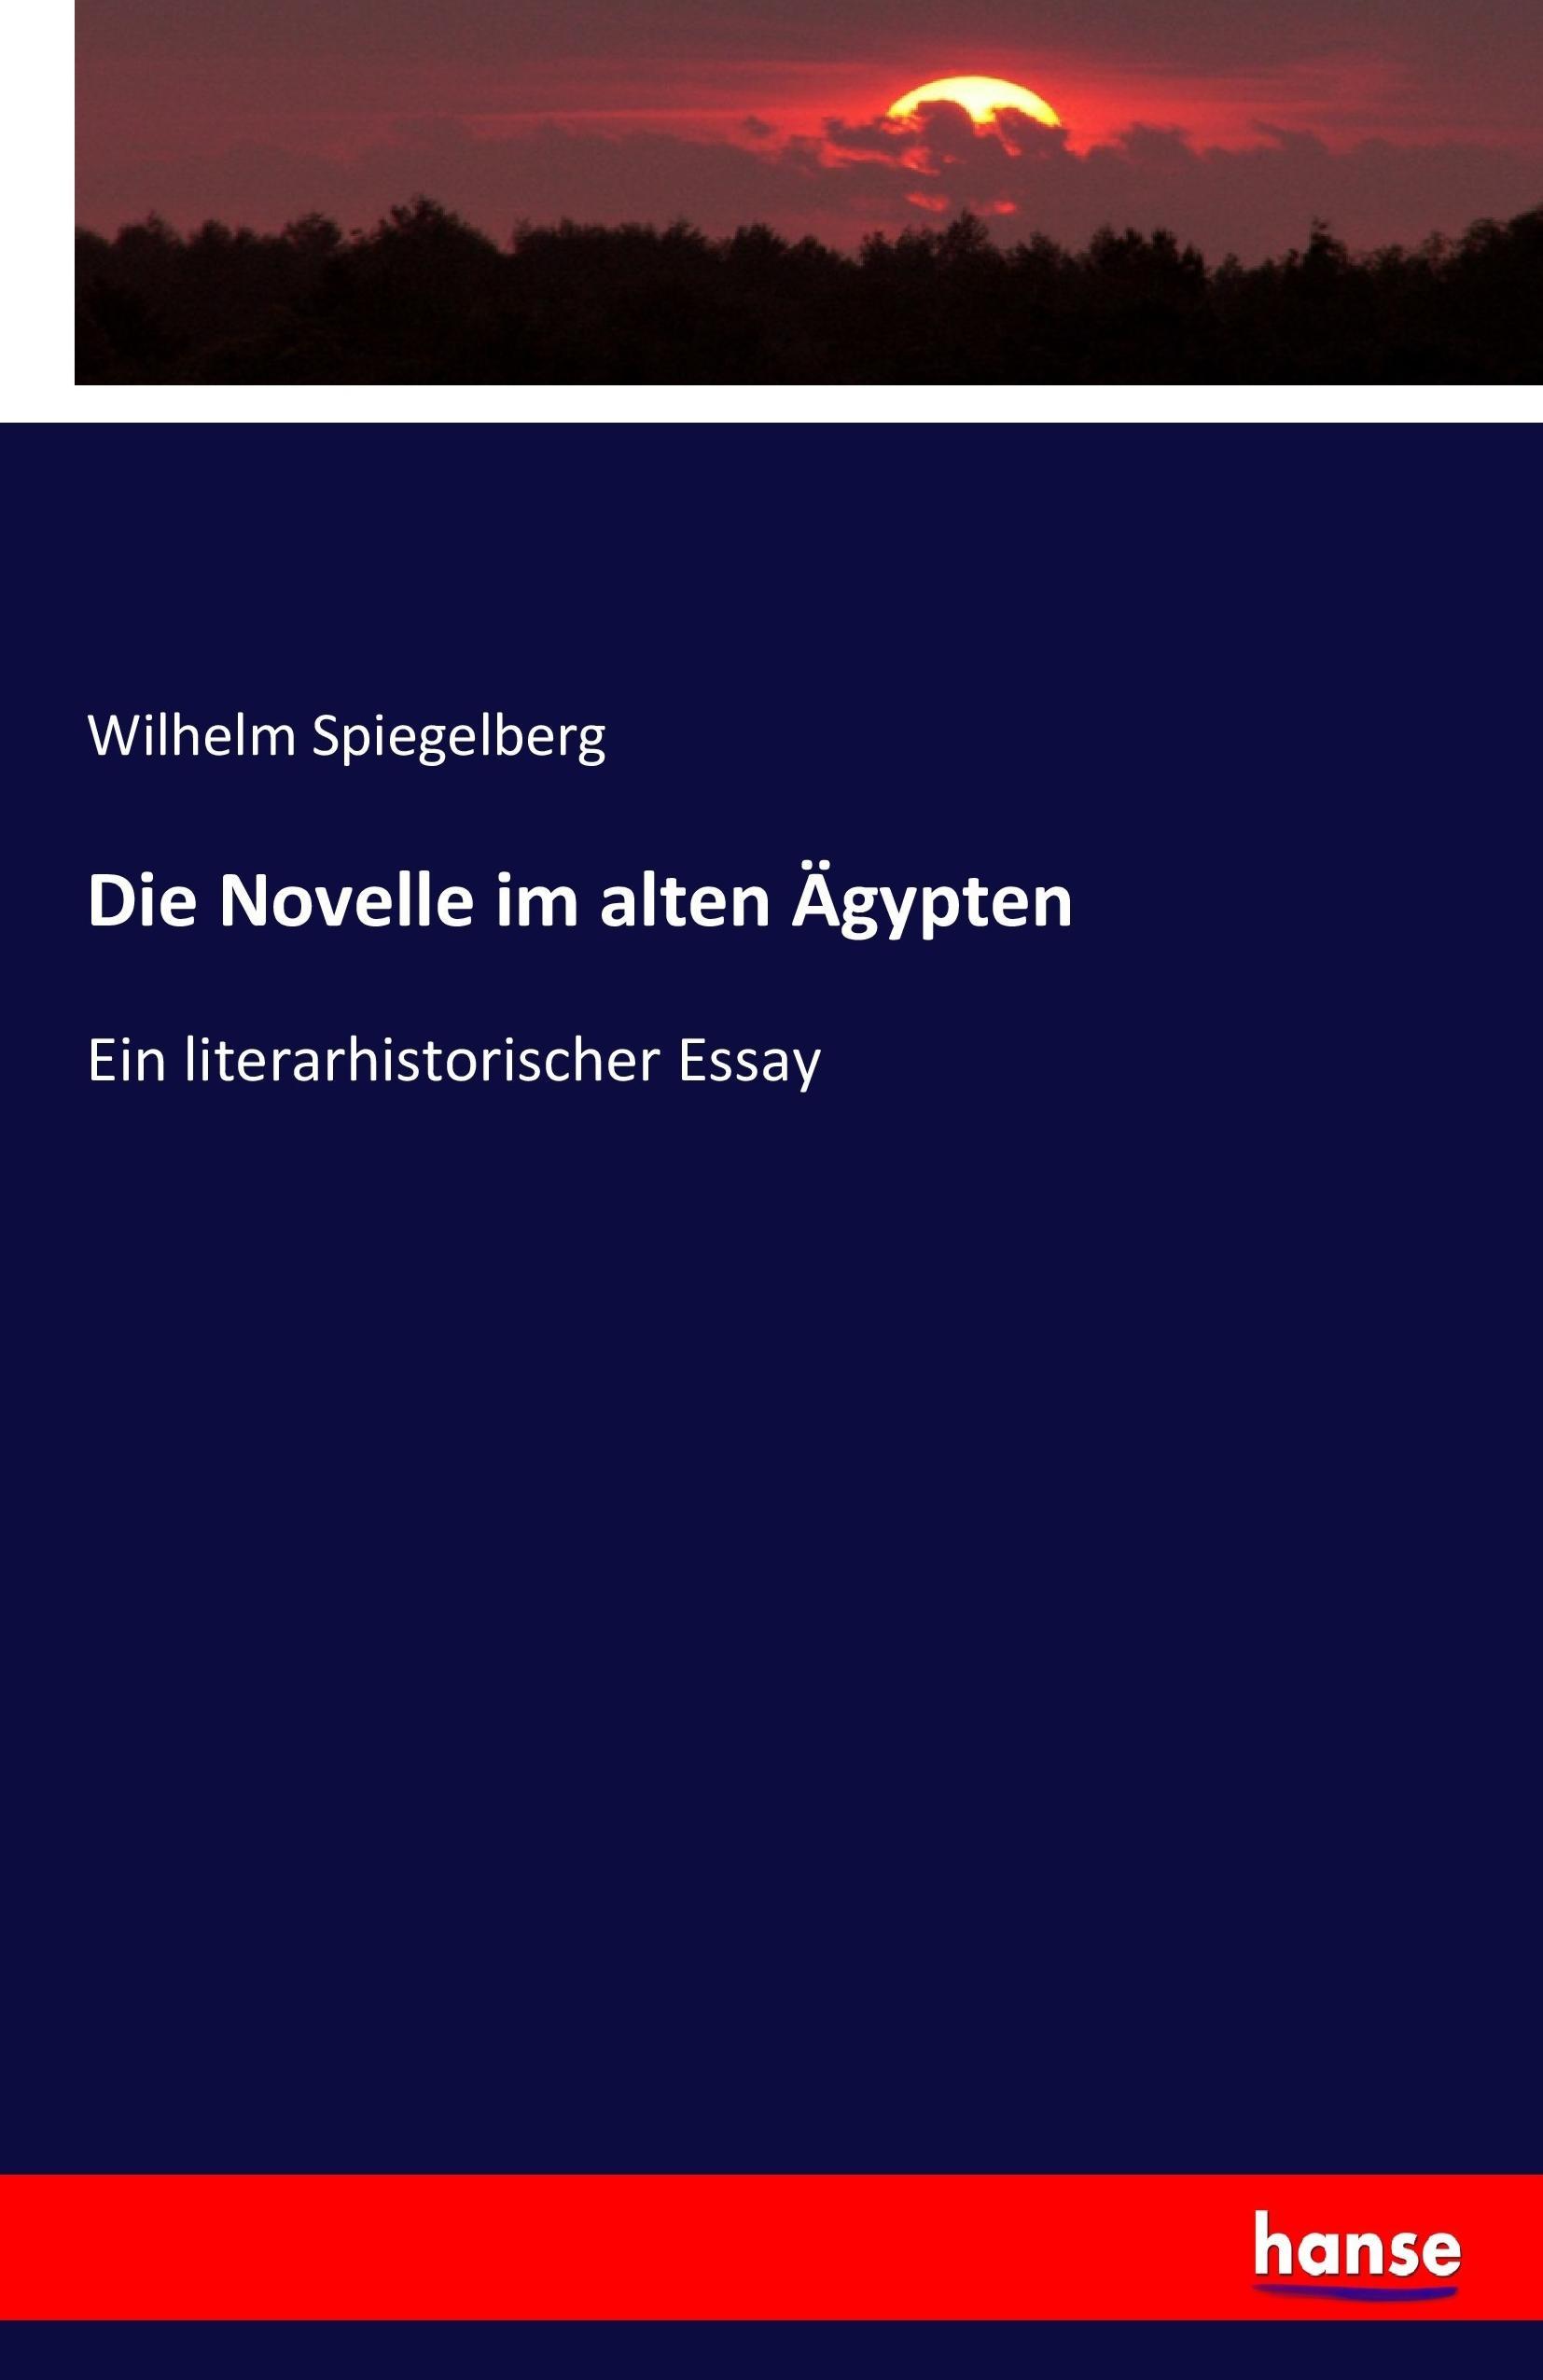 Die Novelle im alten Aegypten - Spiegelberg, Wilhelm